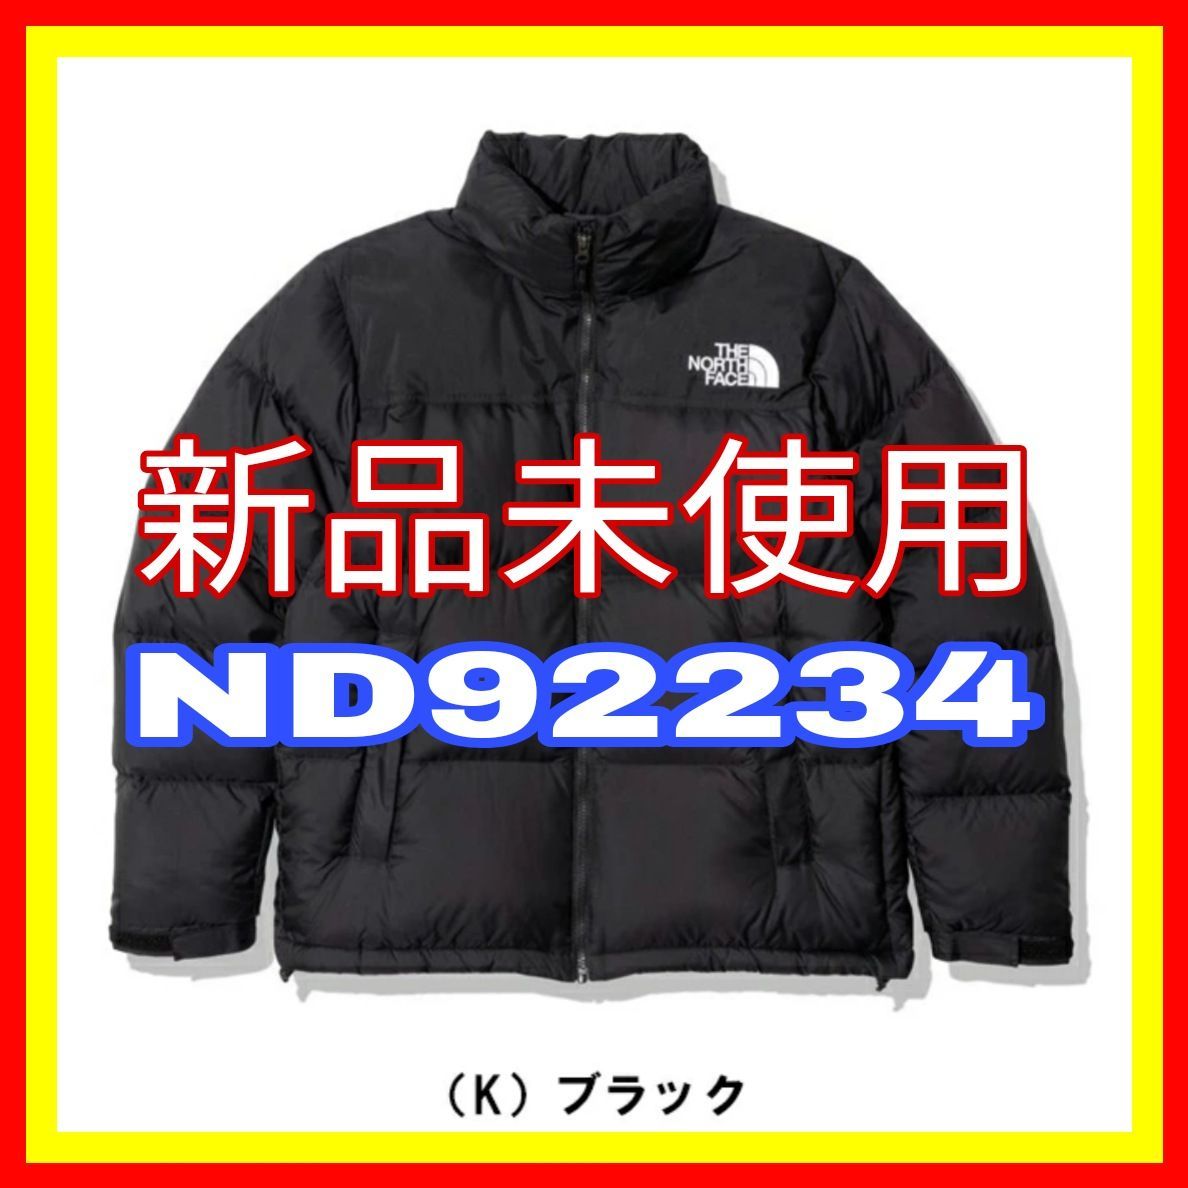 THE NORTH FACE ヌプシジャケット ブラック XL ND92234 - メルカリ